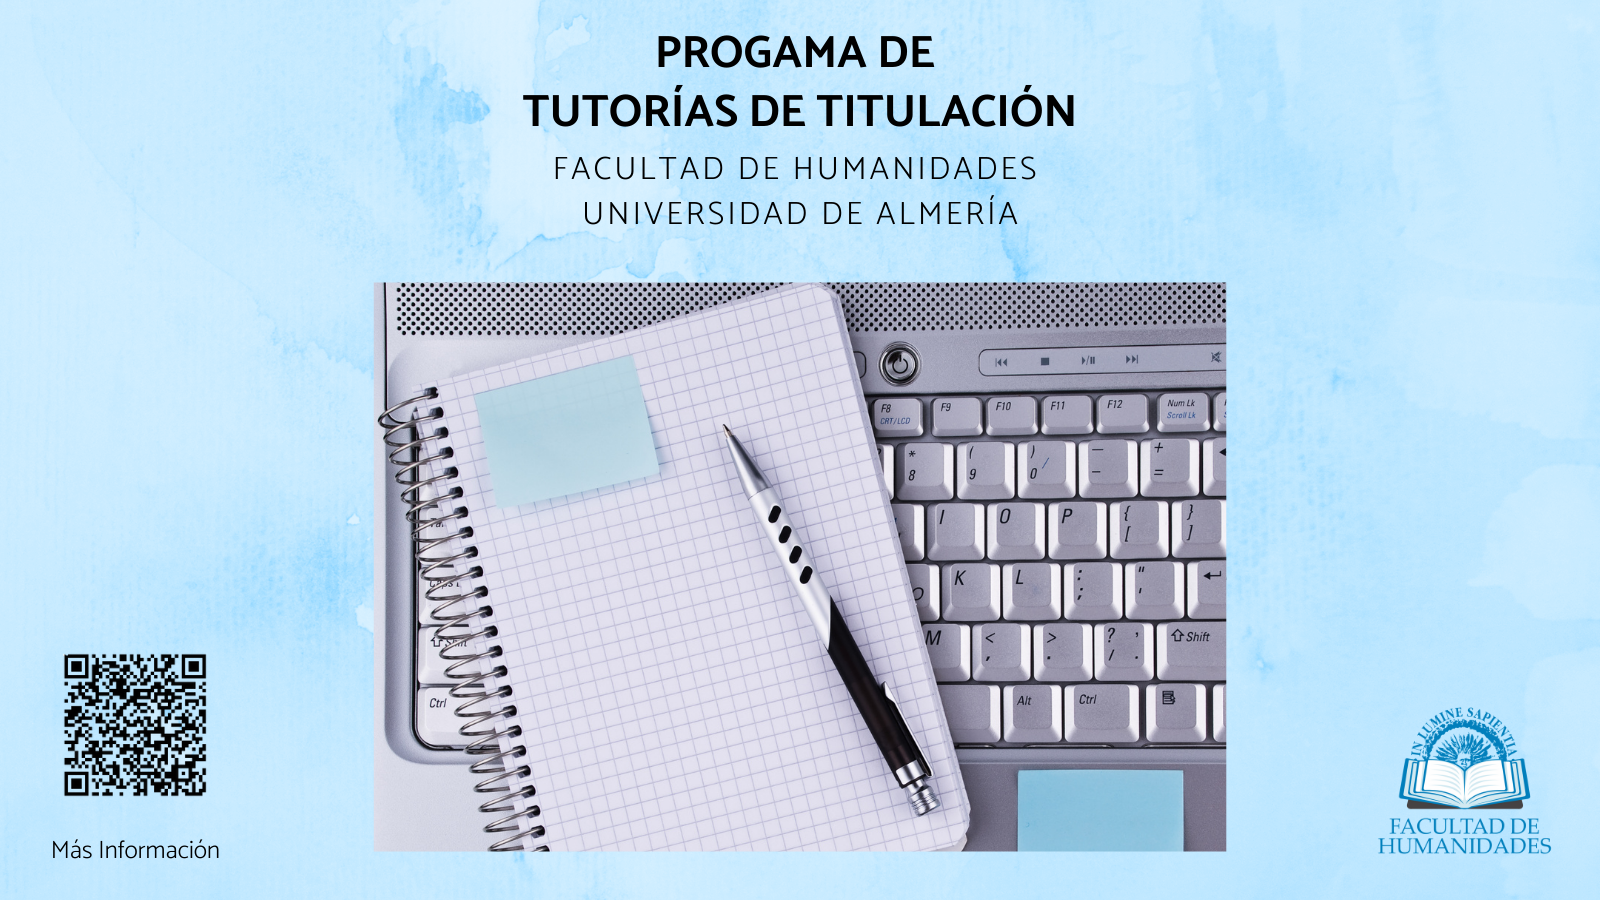 Los estudiantes de la Facultad de Humanidades de la Universidad de Almería podrán disponer de un tutor/a de titulación